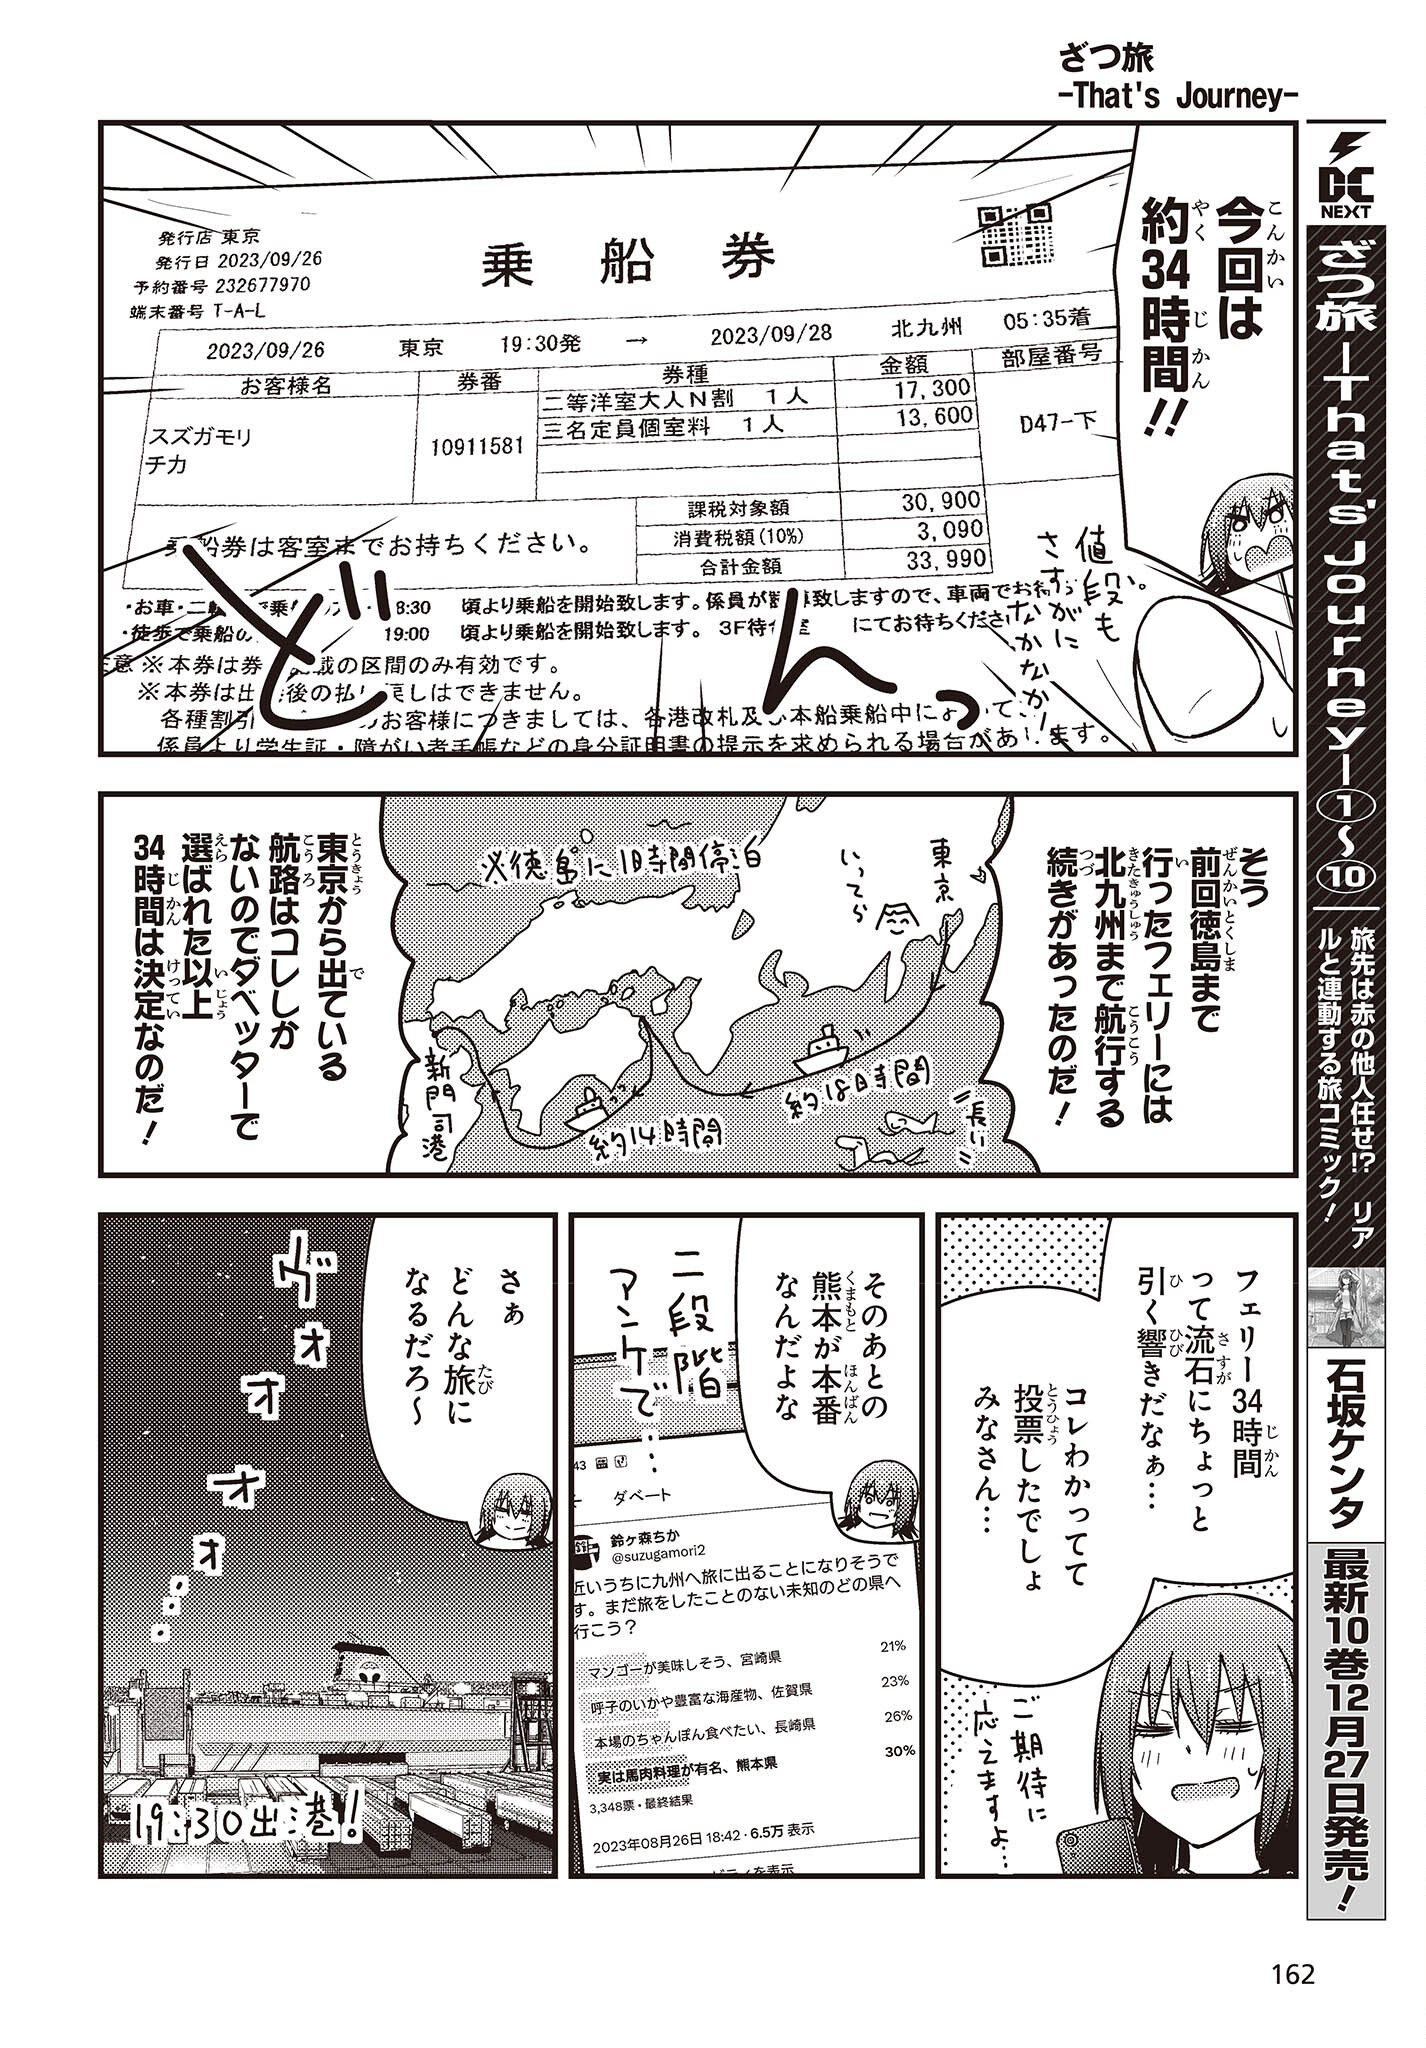 ざつ旅–That?s Journey– 第34話 - Page 2